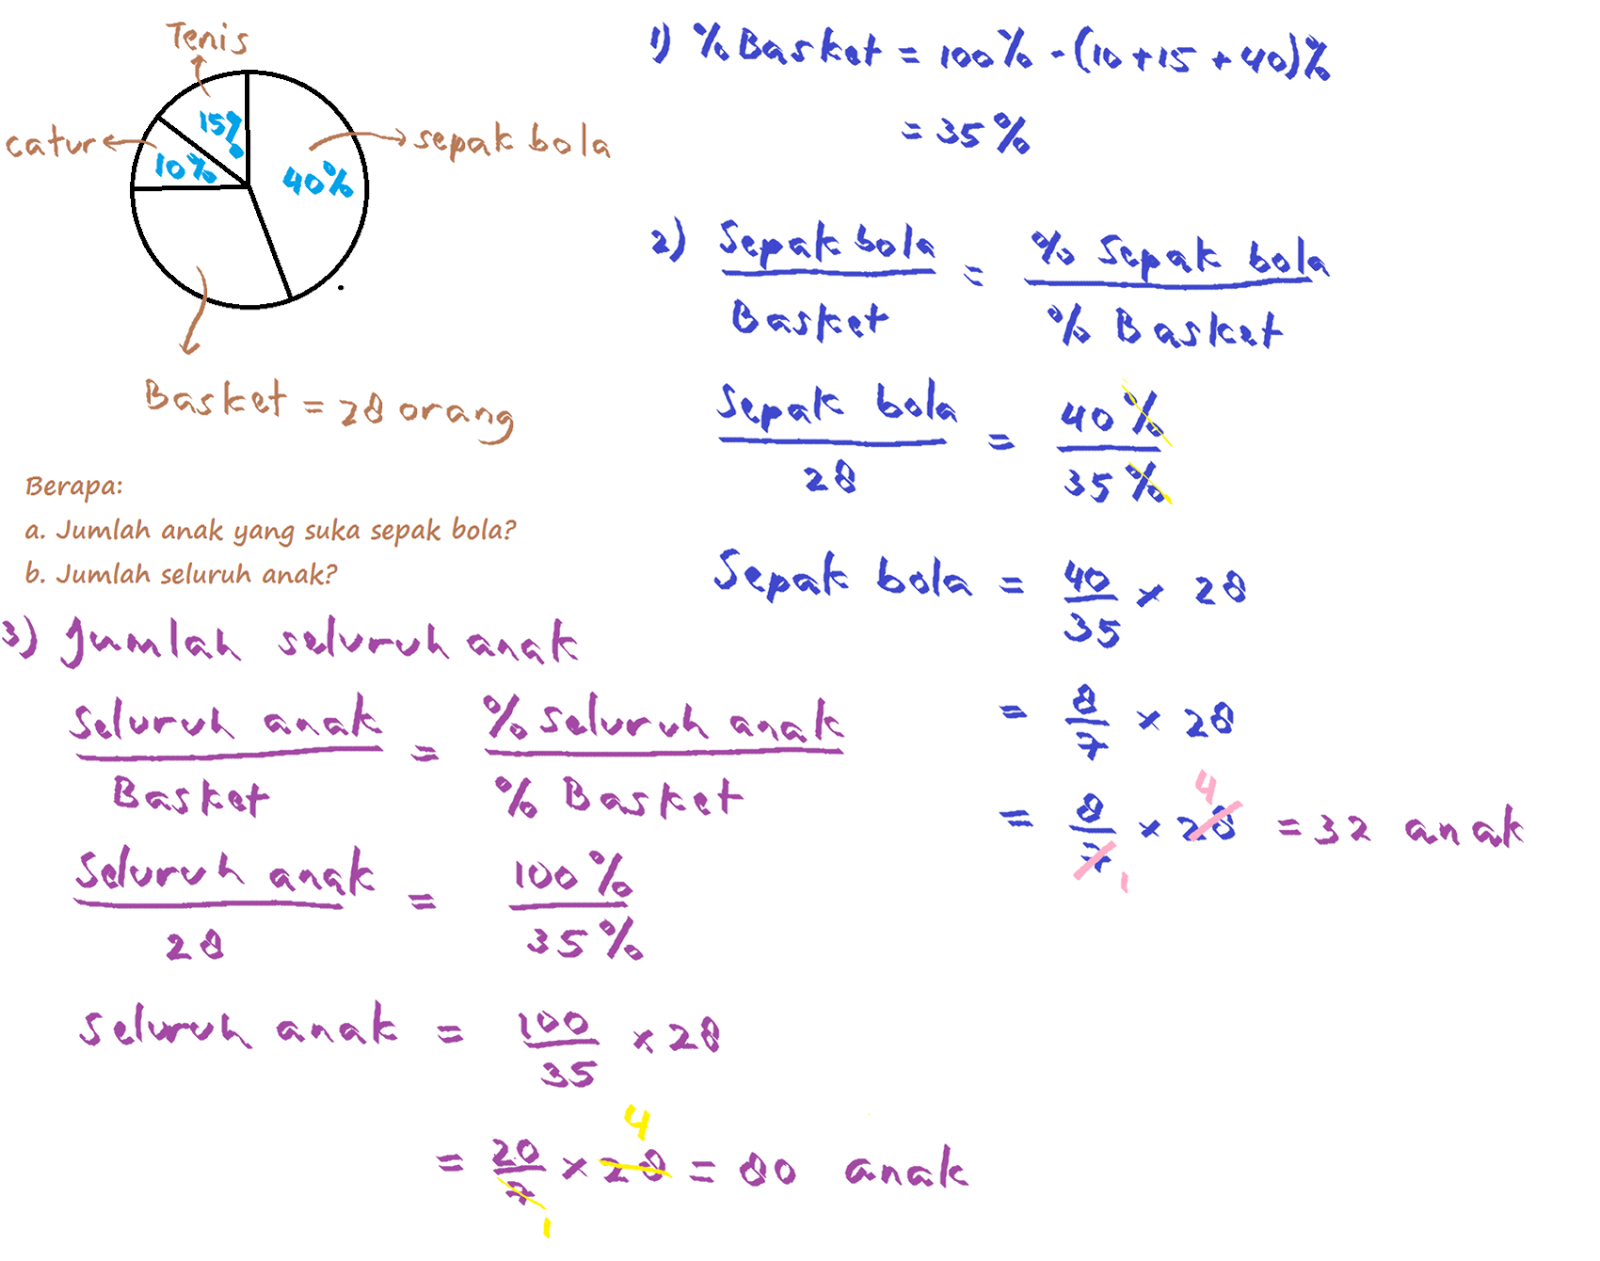 Pengin punya buku “Ringkasan Matematika SD panduan lengkap dan praktis” di bawah ini